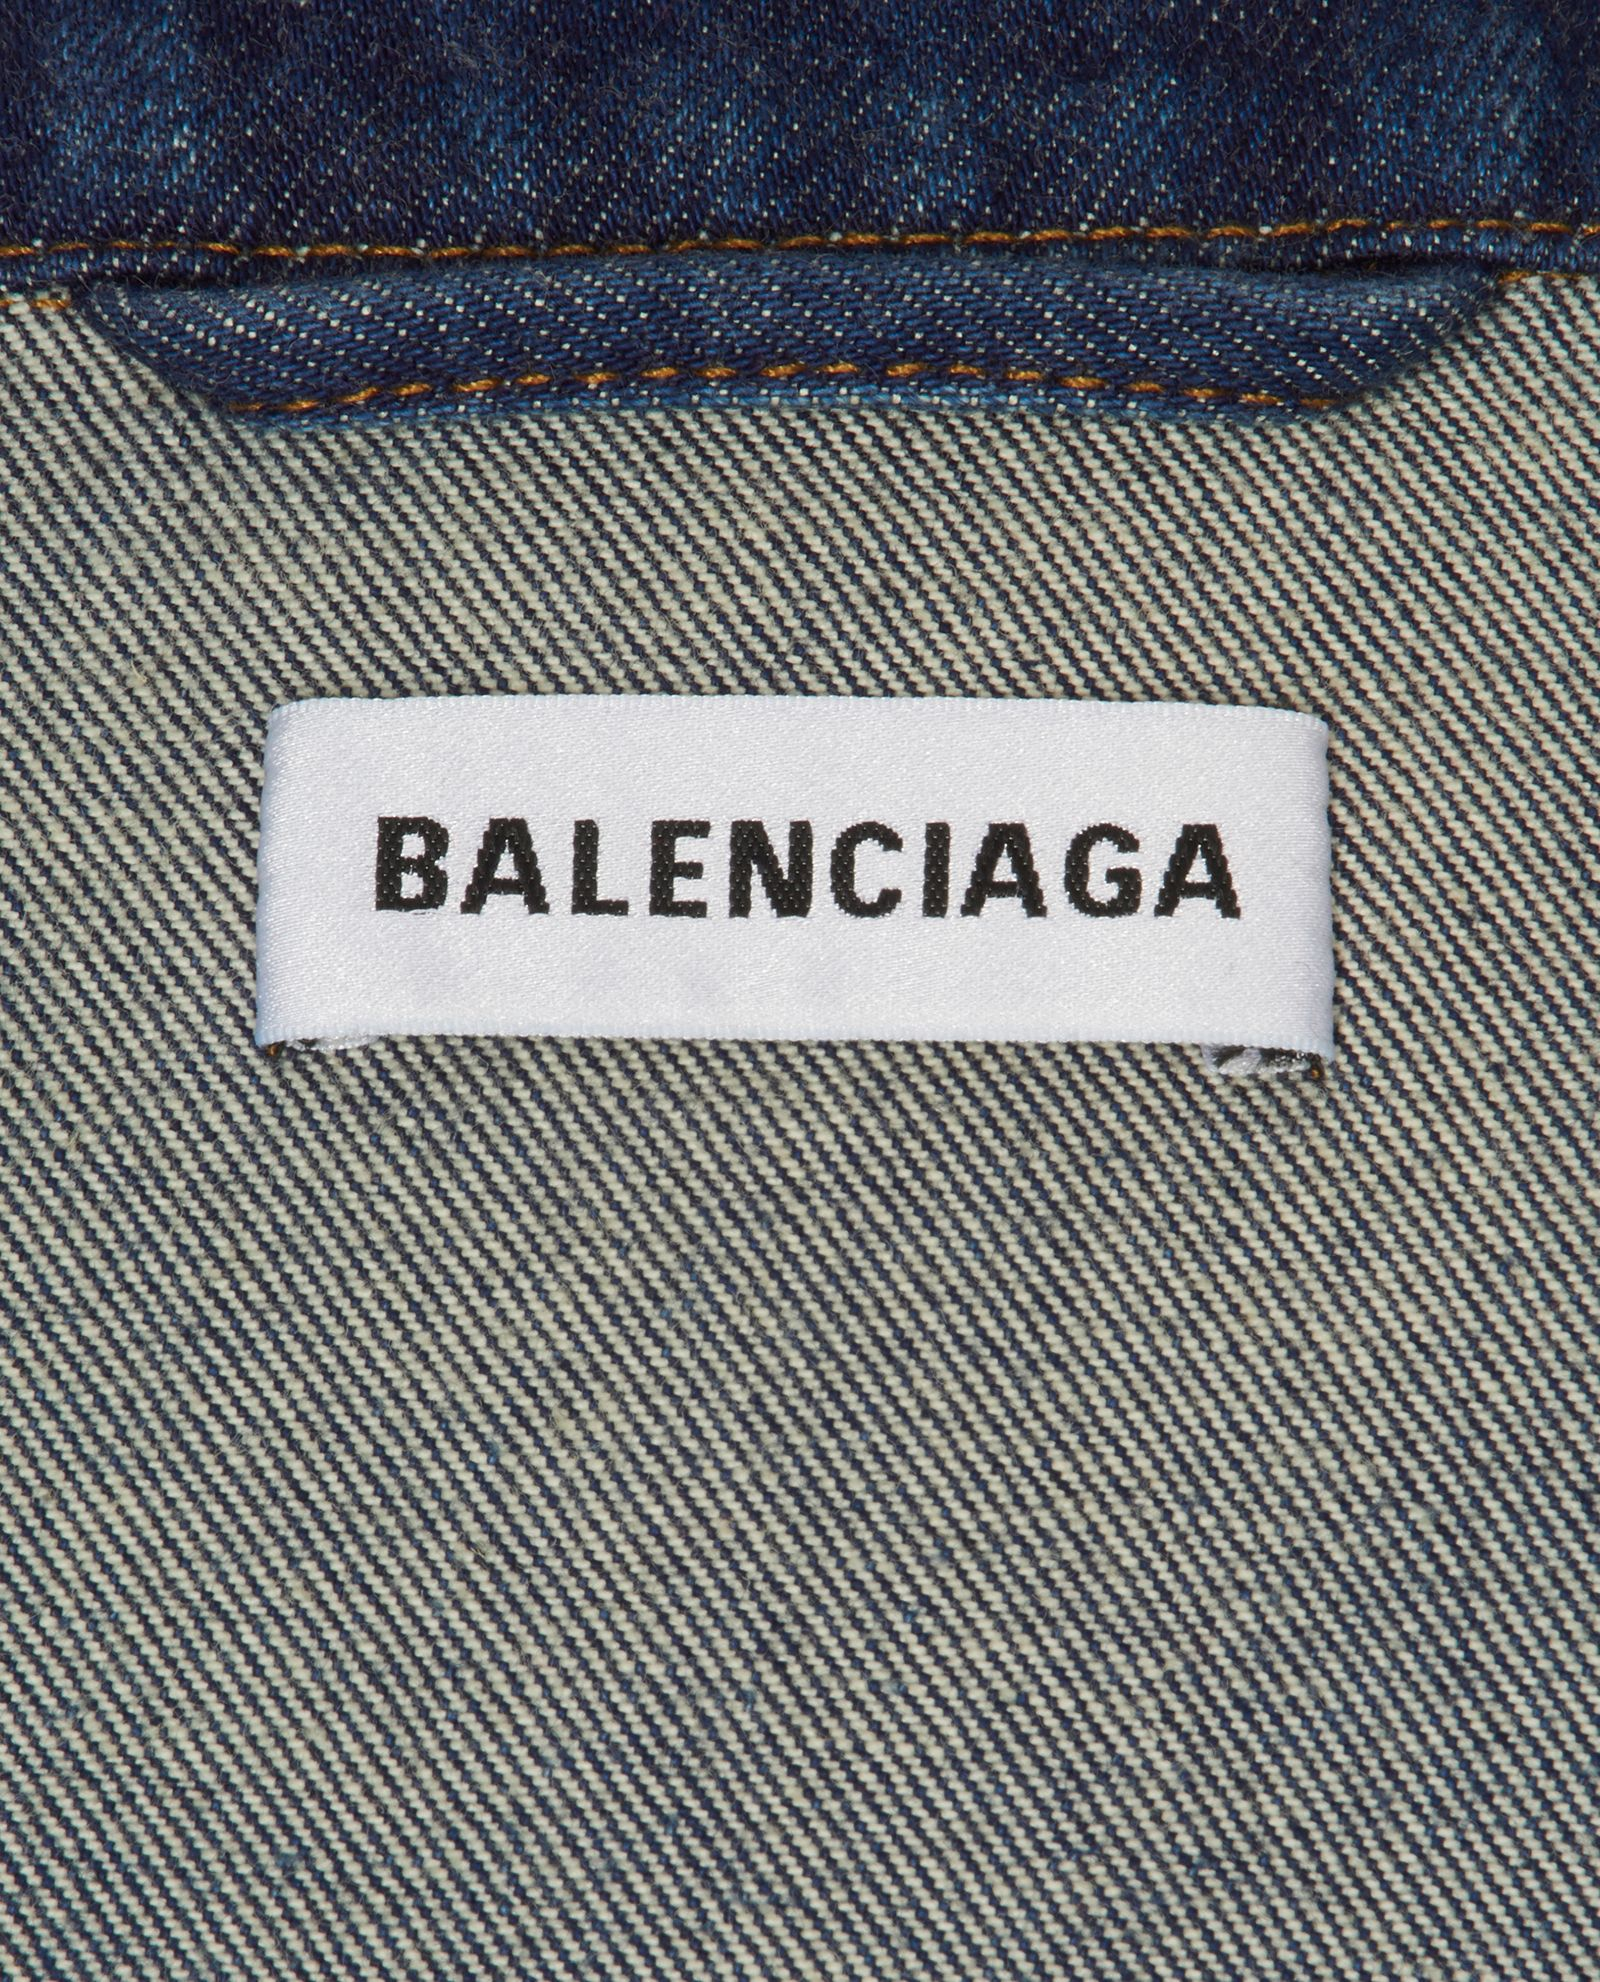 Balenciaga Denim O/S You Are The World Jacket THE GARDEN